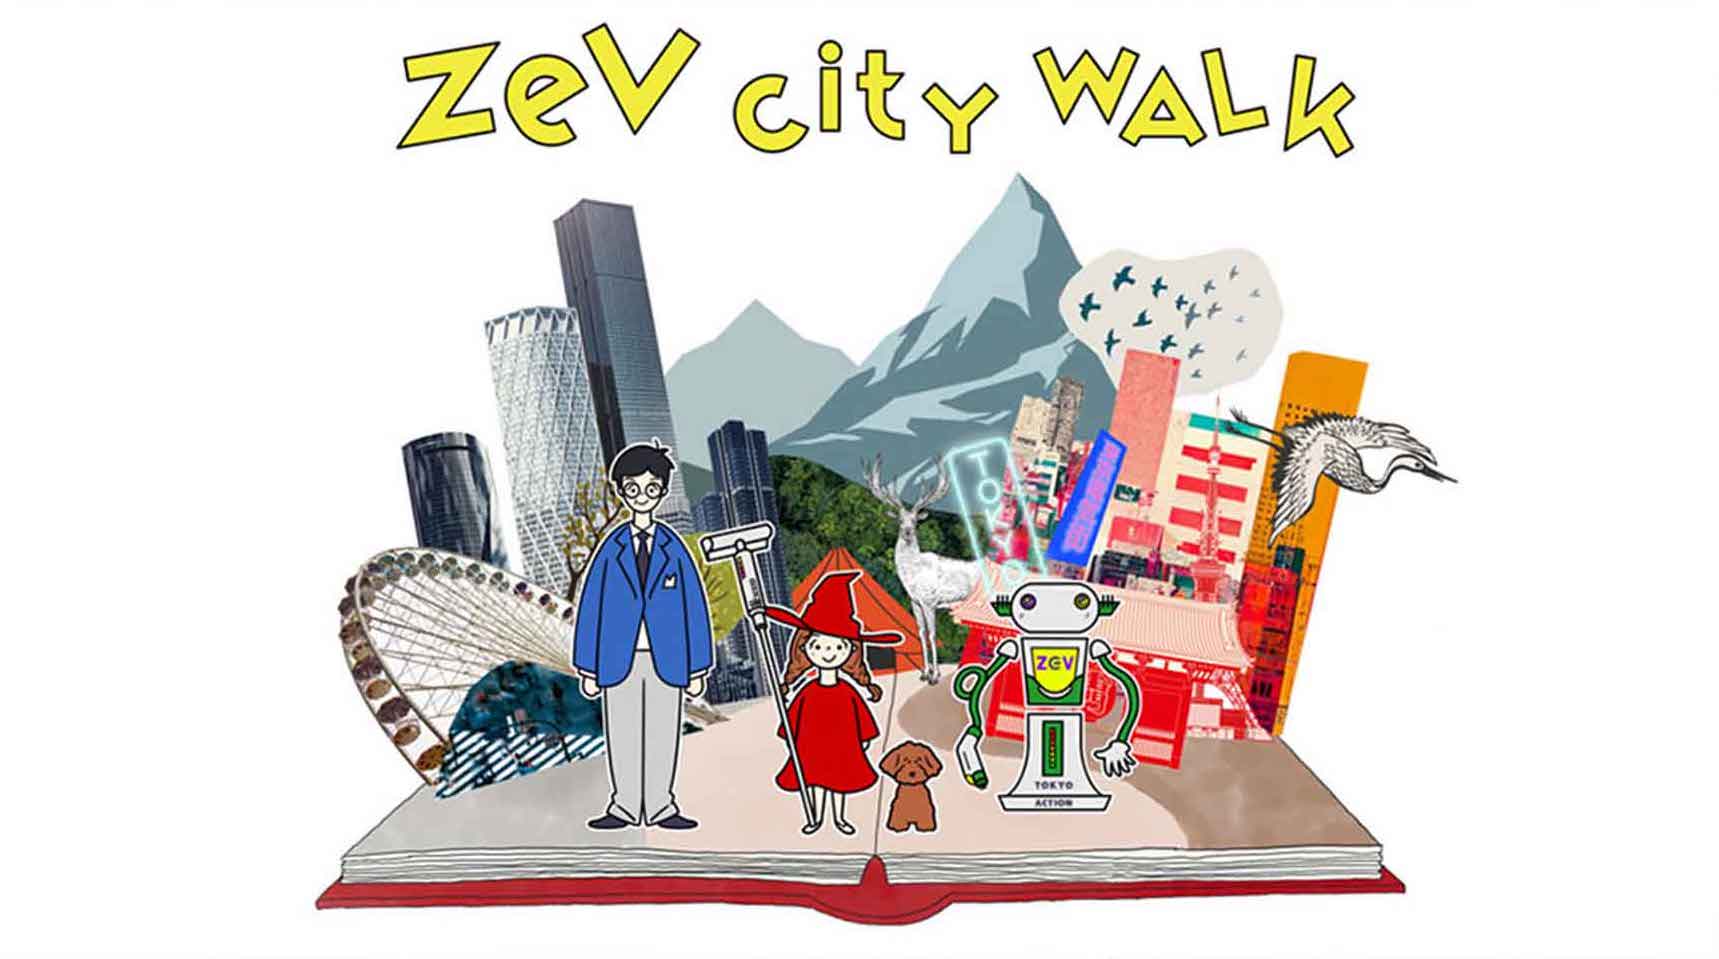 ZEV CITY WALK
絵本の世界に飛びこんで、ZEVが活躍する街を体感